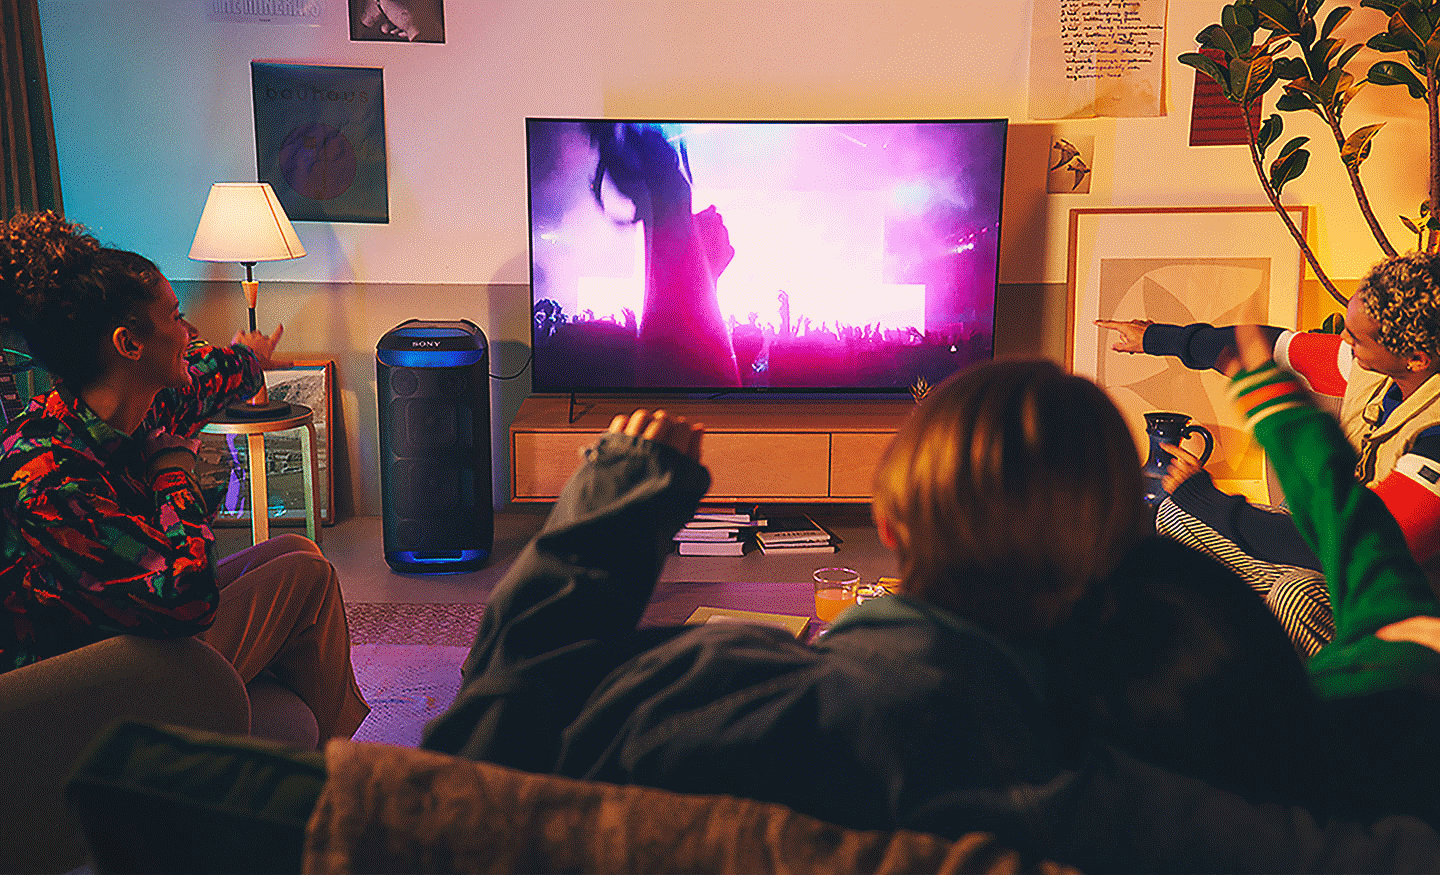 صورة لأشخاص في غرفة معيشة يشاهدون حفلة موسيقية على تلفزيون مع مكبر الصوت SRS-XV800 مع إضاءة محيطة زرقاء بجانبه